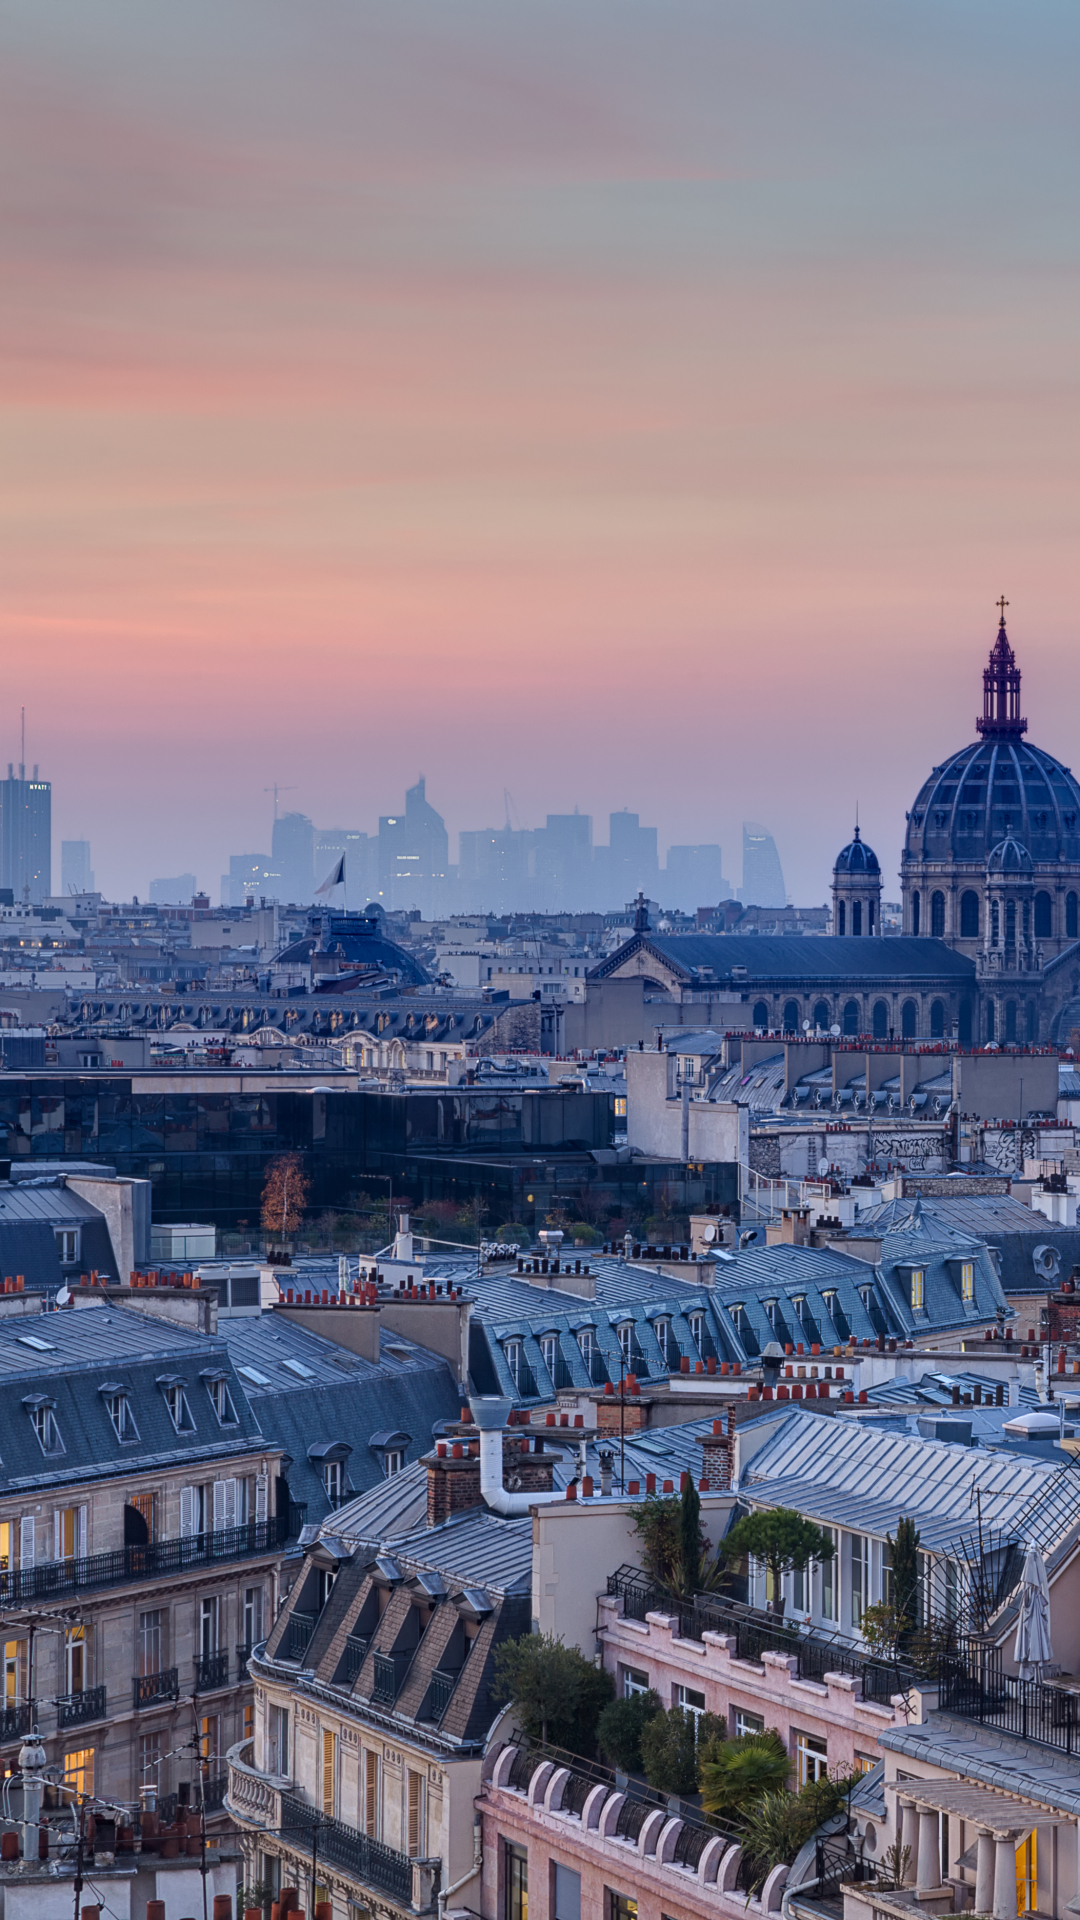 Paris Rooftops by Espinozr